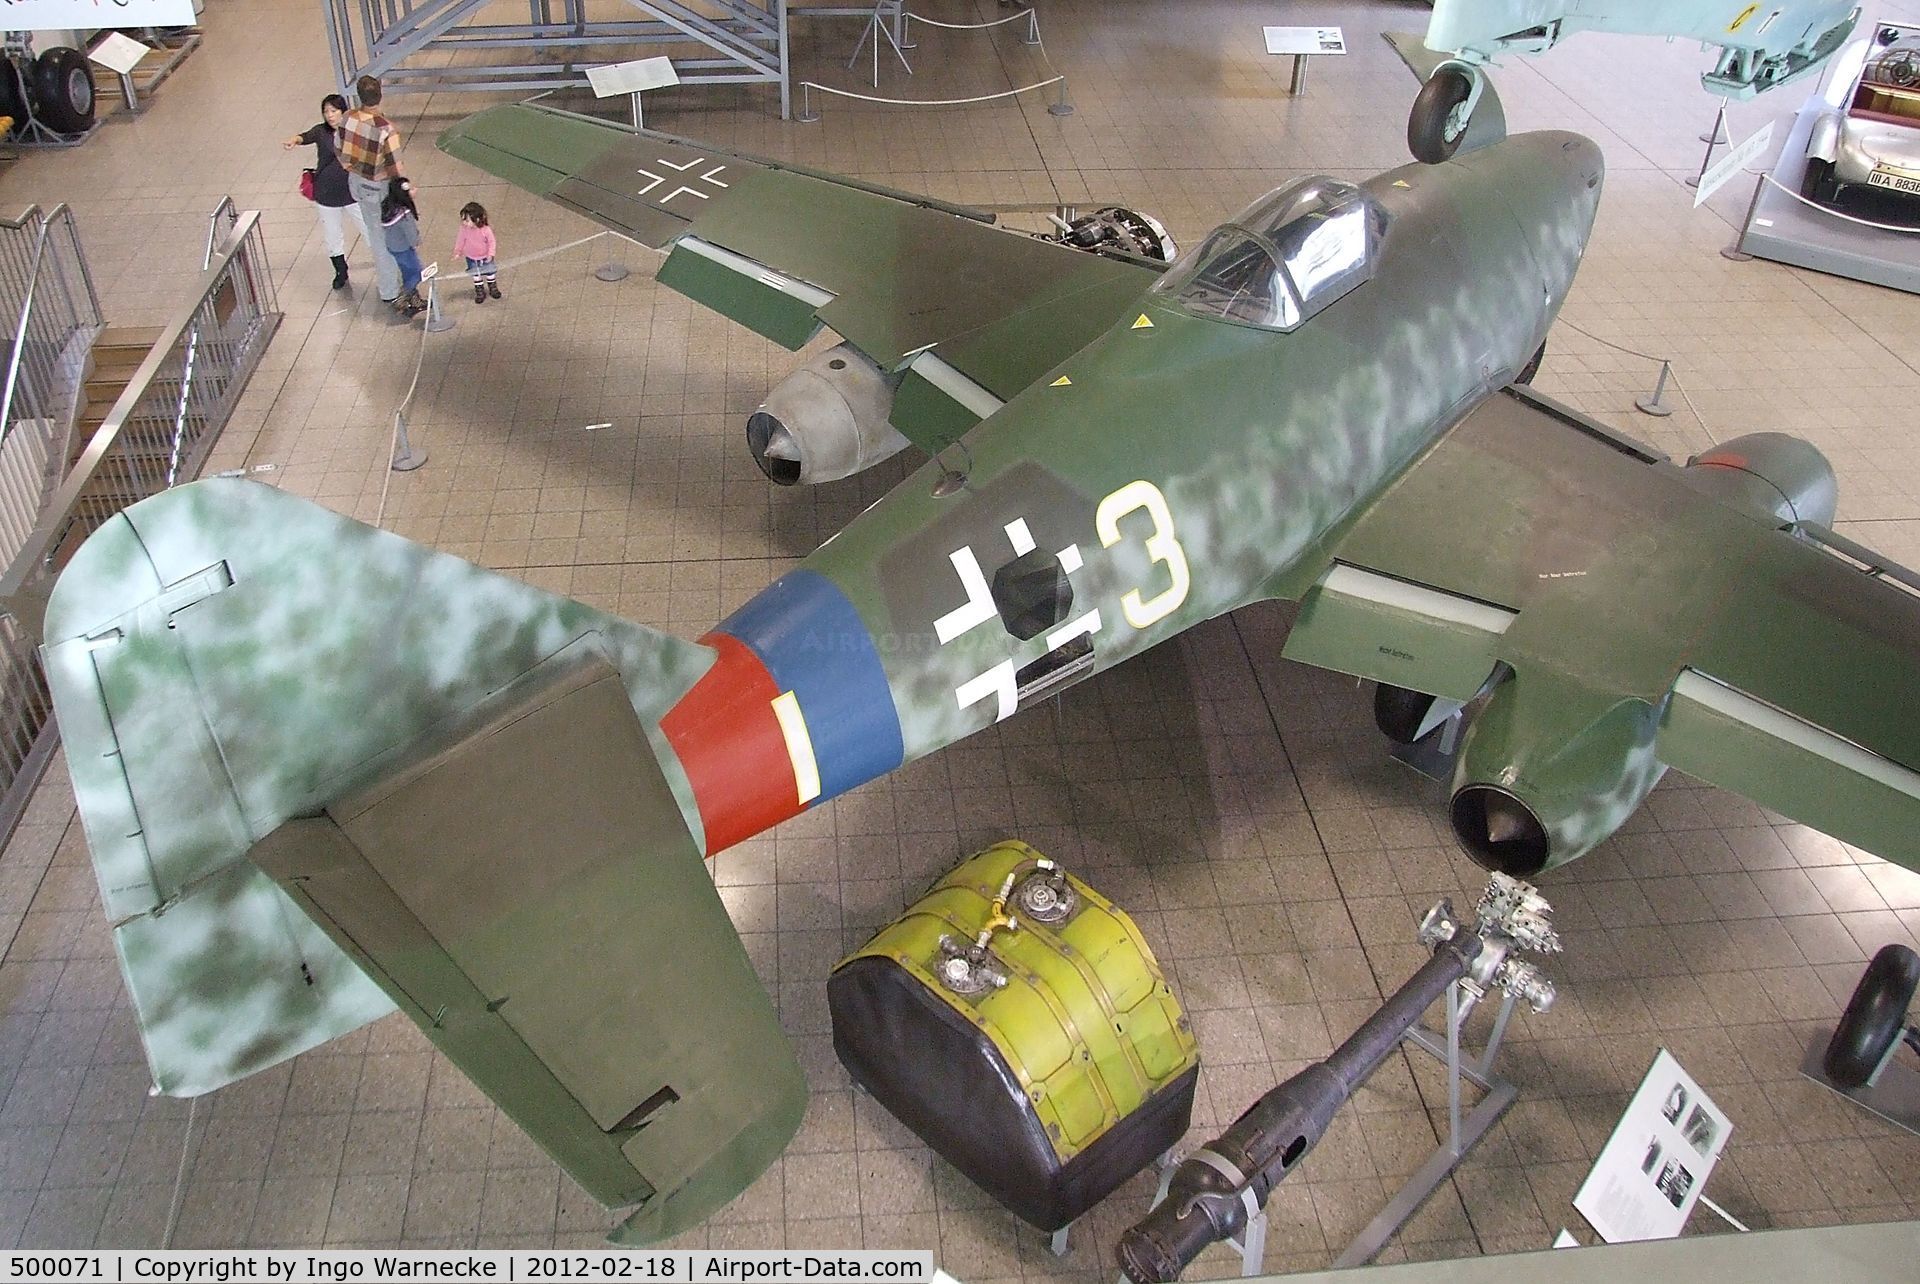 500071, 1945 Messerschmitt Me 262A-1a Schwalbe C/N 500071, Messerschmitt Me 262A at the Deutsches Museum, München (Munich)